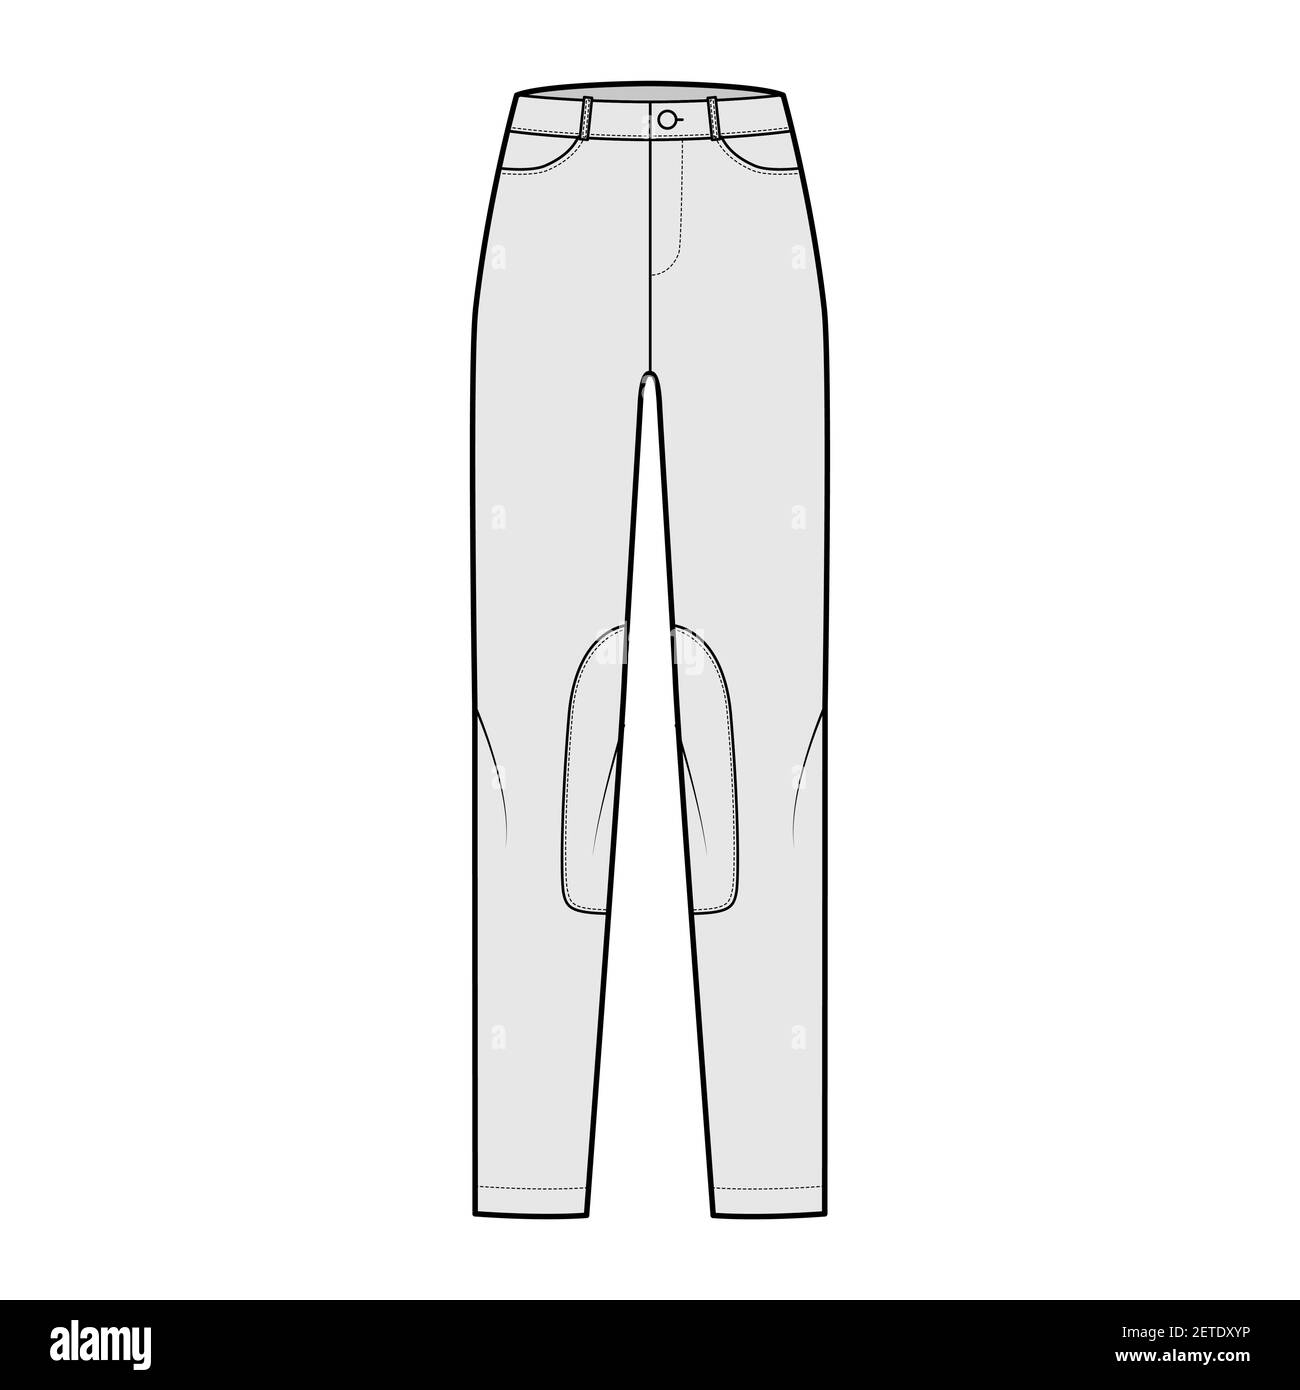 Ensemble de jeans Kentucky Jodhpurs pantalons denim illustration technique de la mode avec taille basse, taille, passants de ceinture, longueurs complètes. Modèle de vêtement à fond plat de couleur grise sur le devant. Femmes, hommes, maquette de CAD unisex Illustration de Vecteur